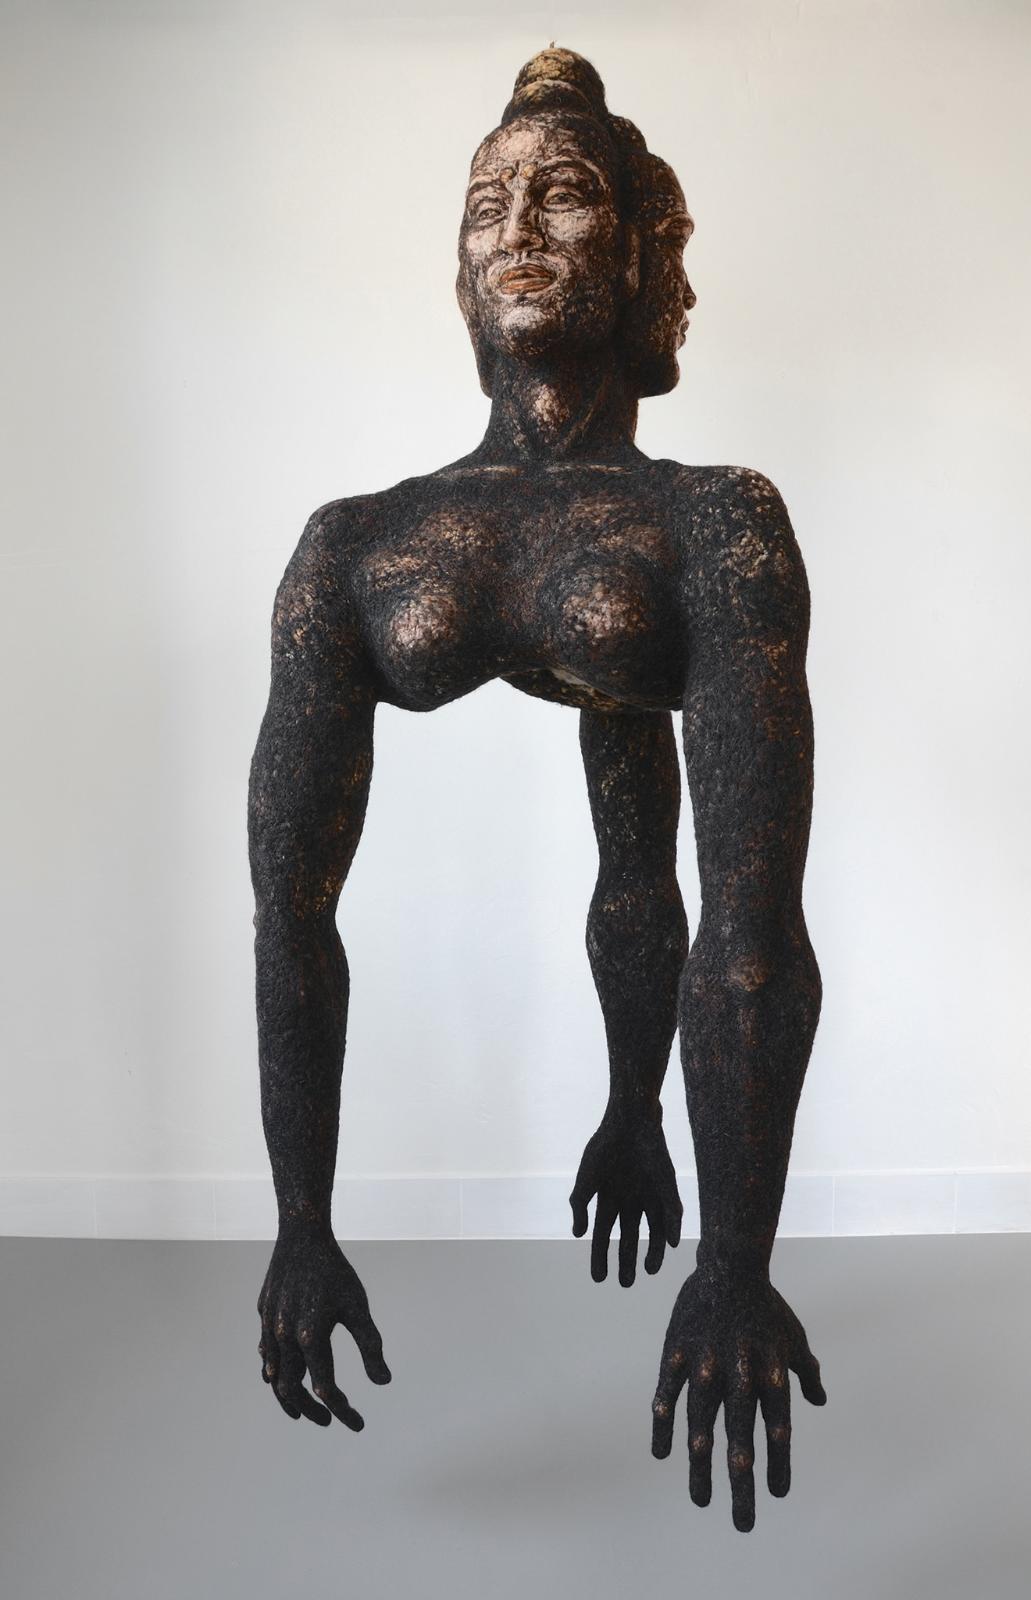 Stefanie Ehrenfried, Große Dunkle, 2009/2019, Schafwolle, nadelgefilzt, 219 cm x 90 cm x 90 cm, Preis auf Anfrage, ehs008kü